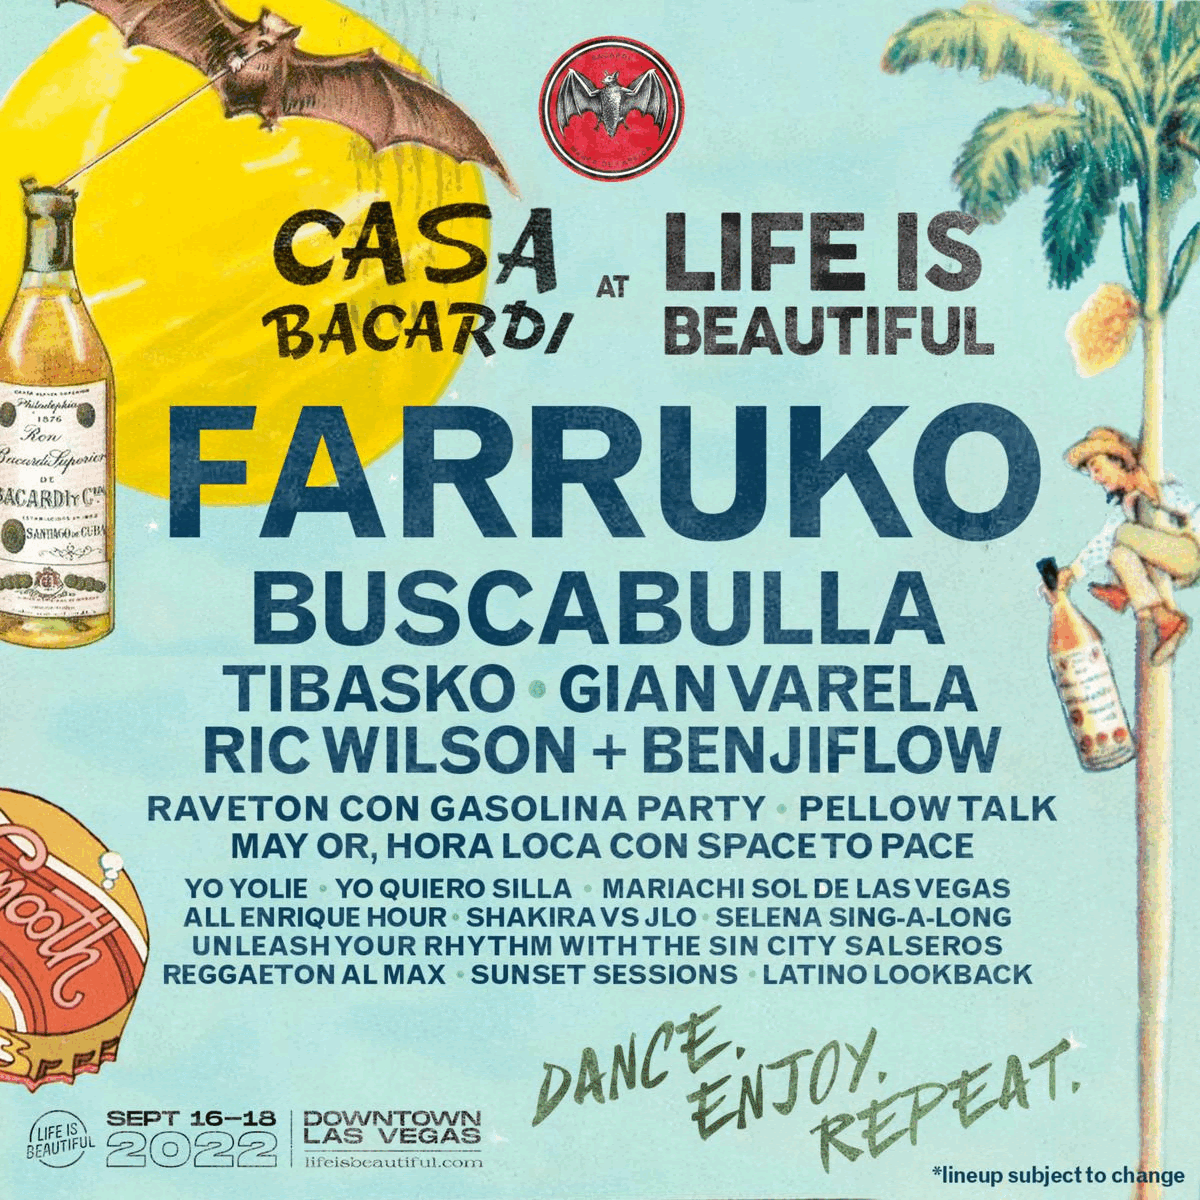 Farruko @ CASA BACARÍ . See The Full Lineup for CASA BACARDÍ Now!